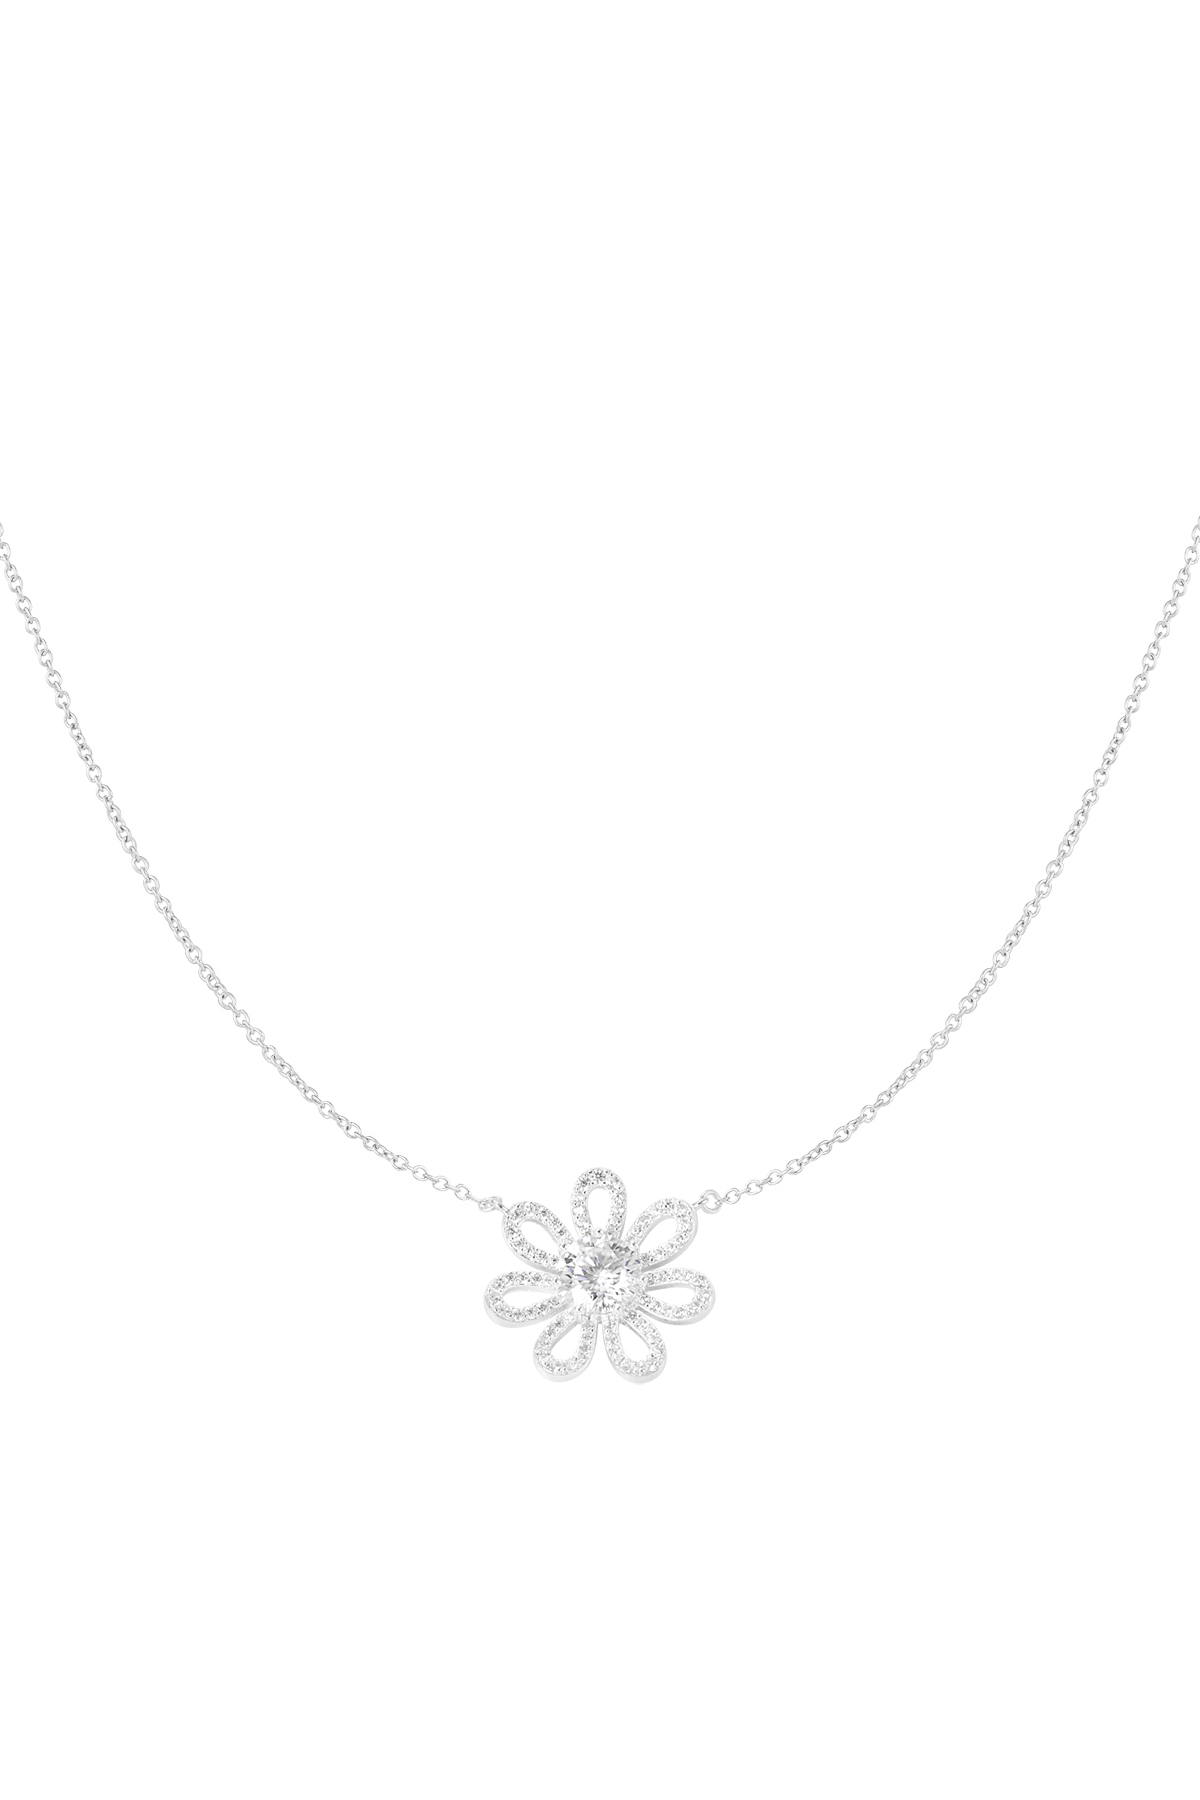 Halskette Strass Blume - Silber